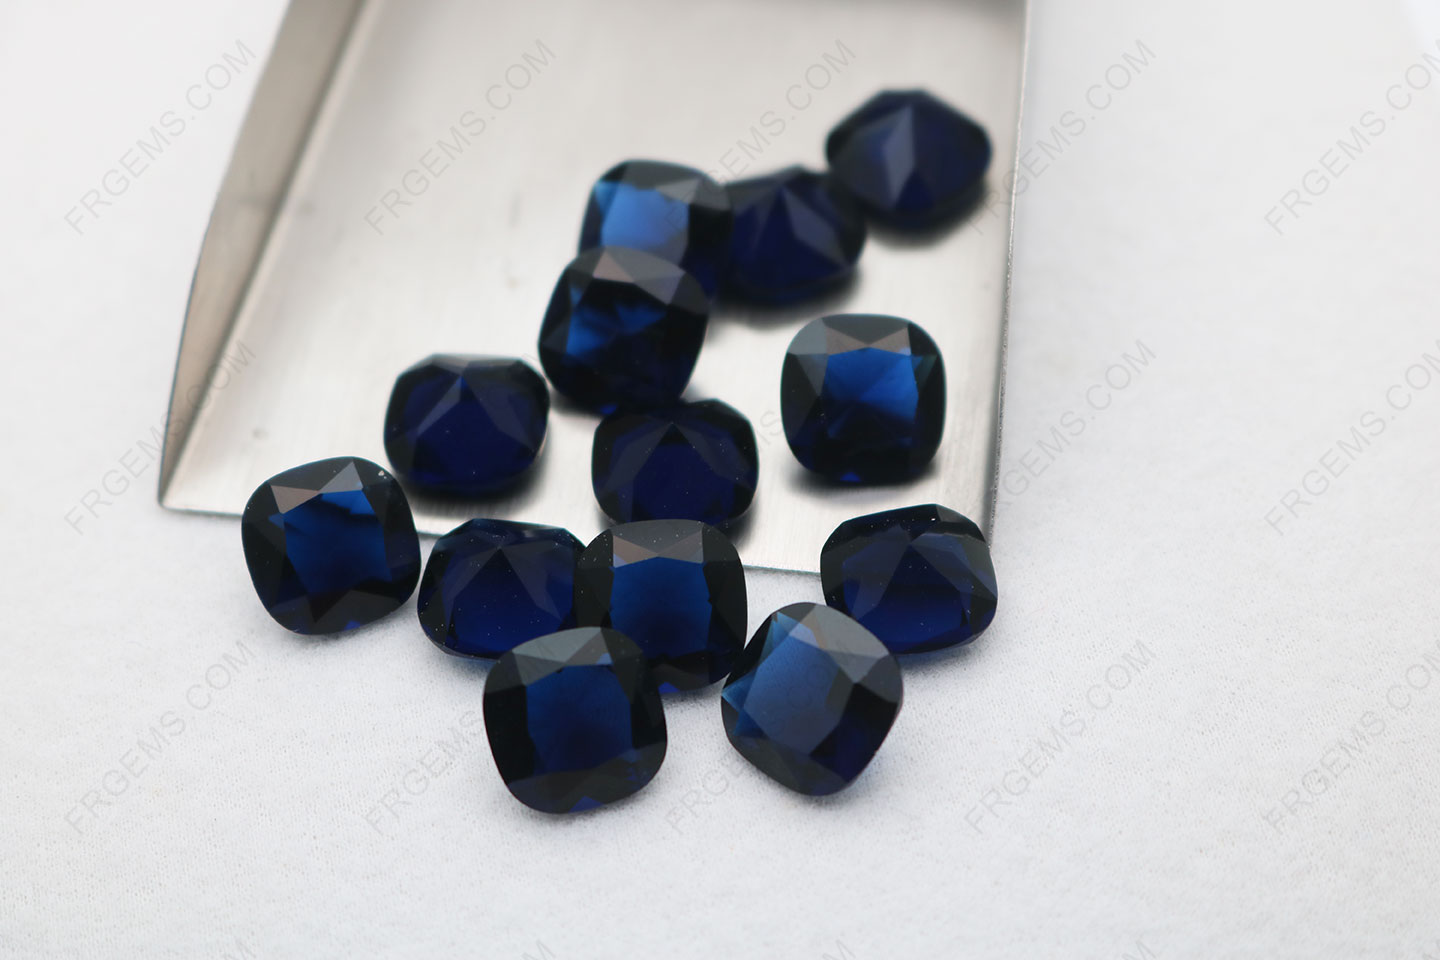 Bulk Wholesale Loose Glass Sapphire Blue color BA213# color Cushion shape faceted 12x12mm gemstones